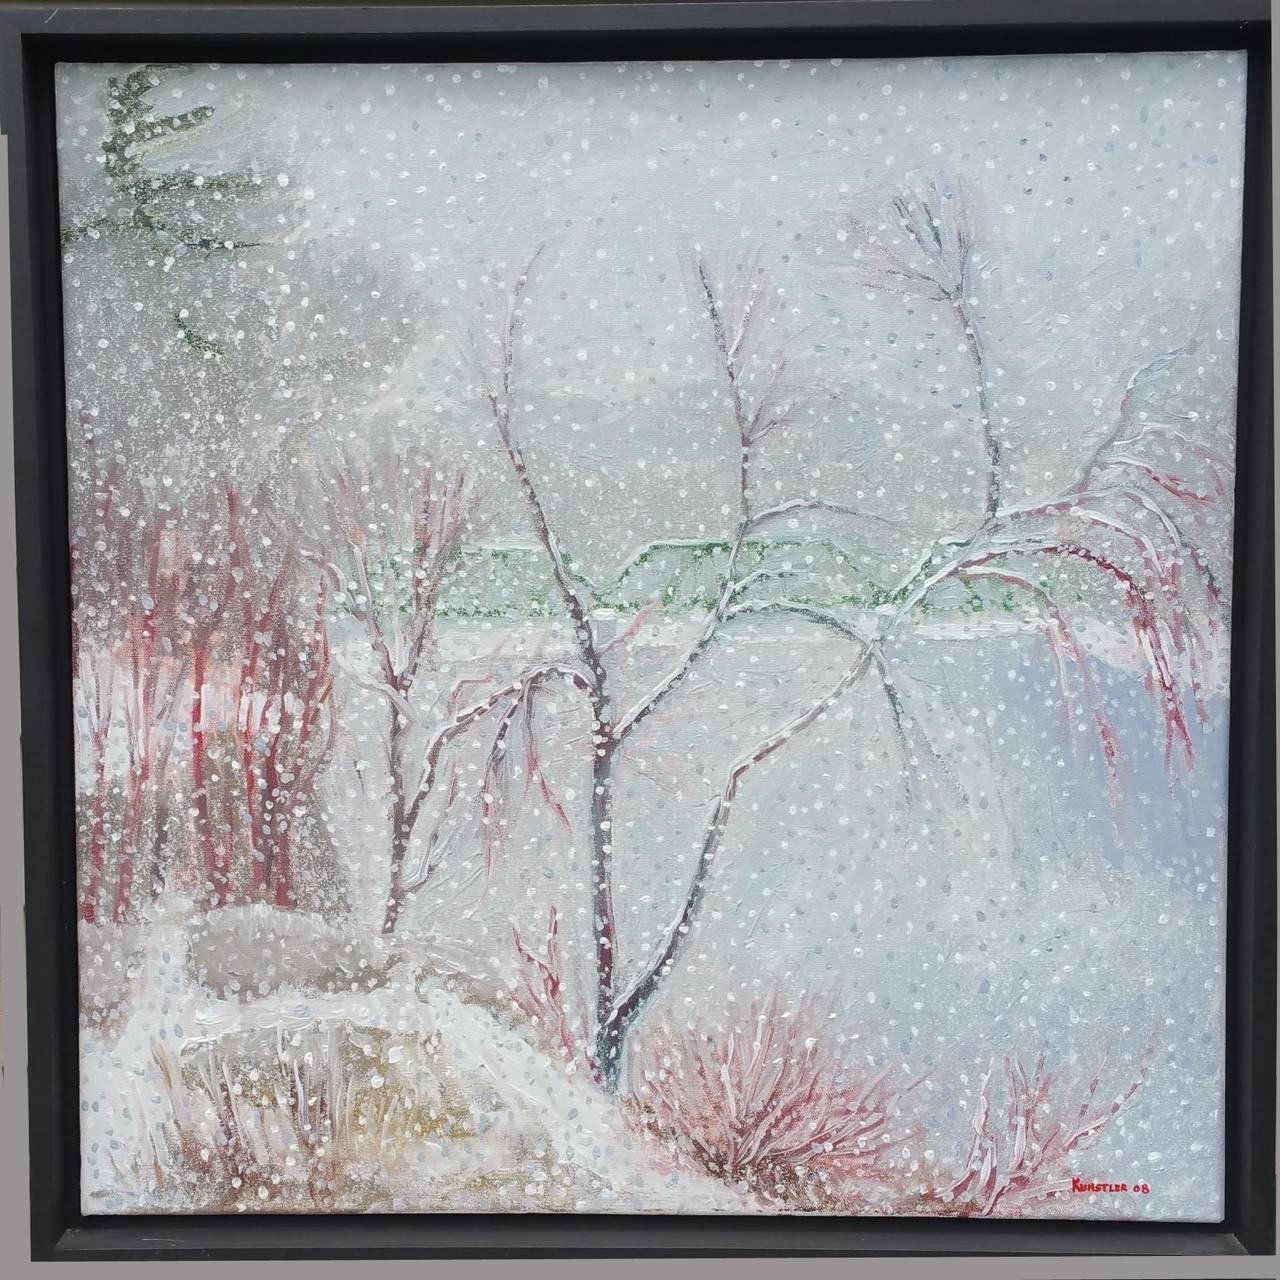 James Kunstler Landscape Painting - The Bridge at Clark’s Mills in Winter